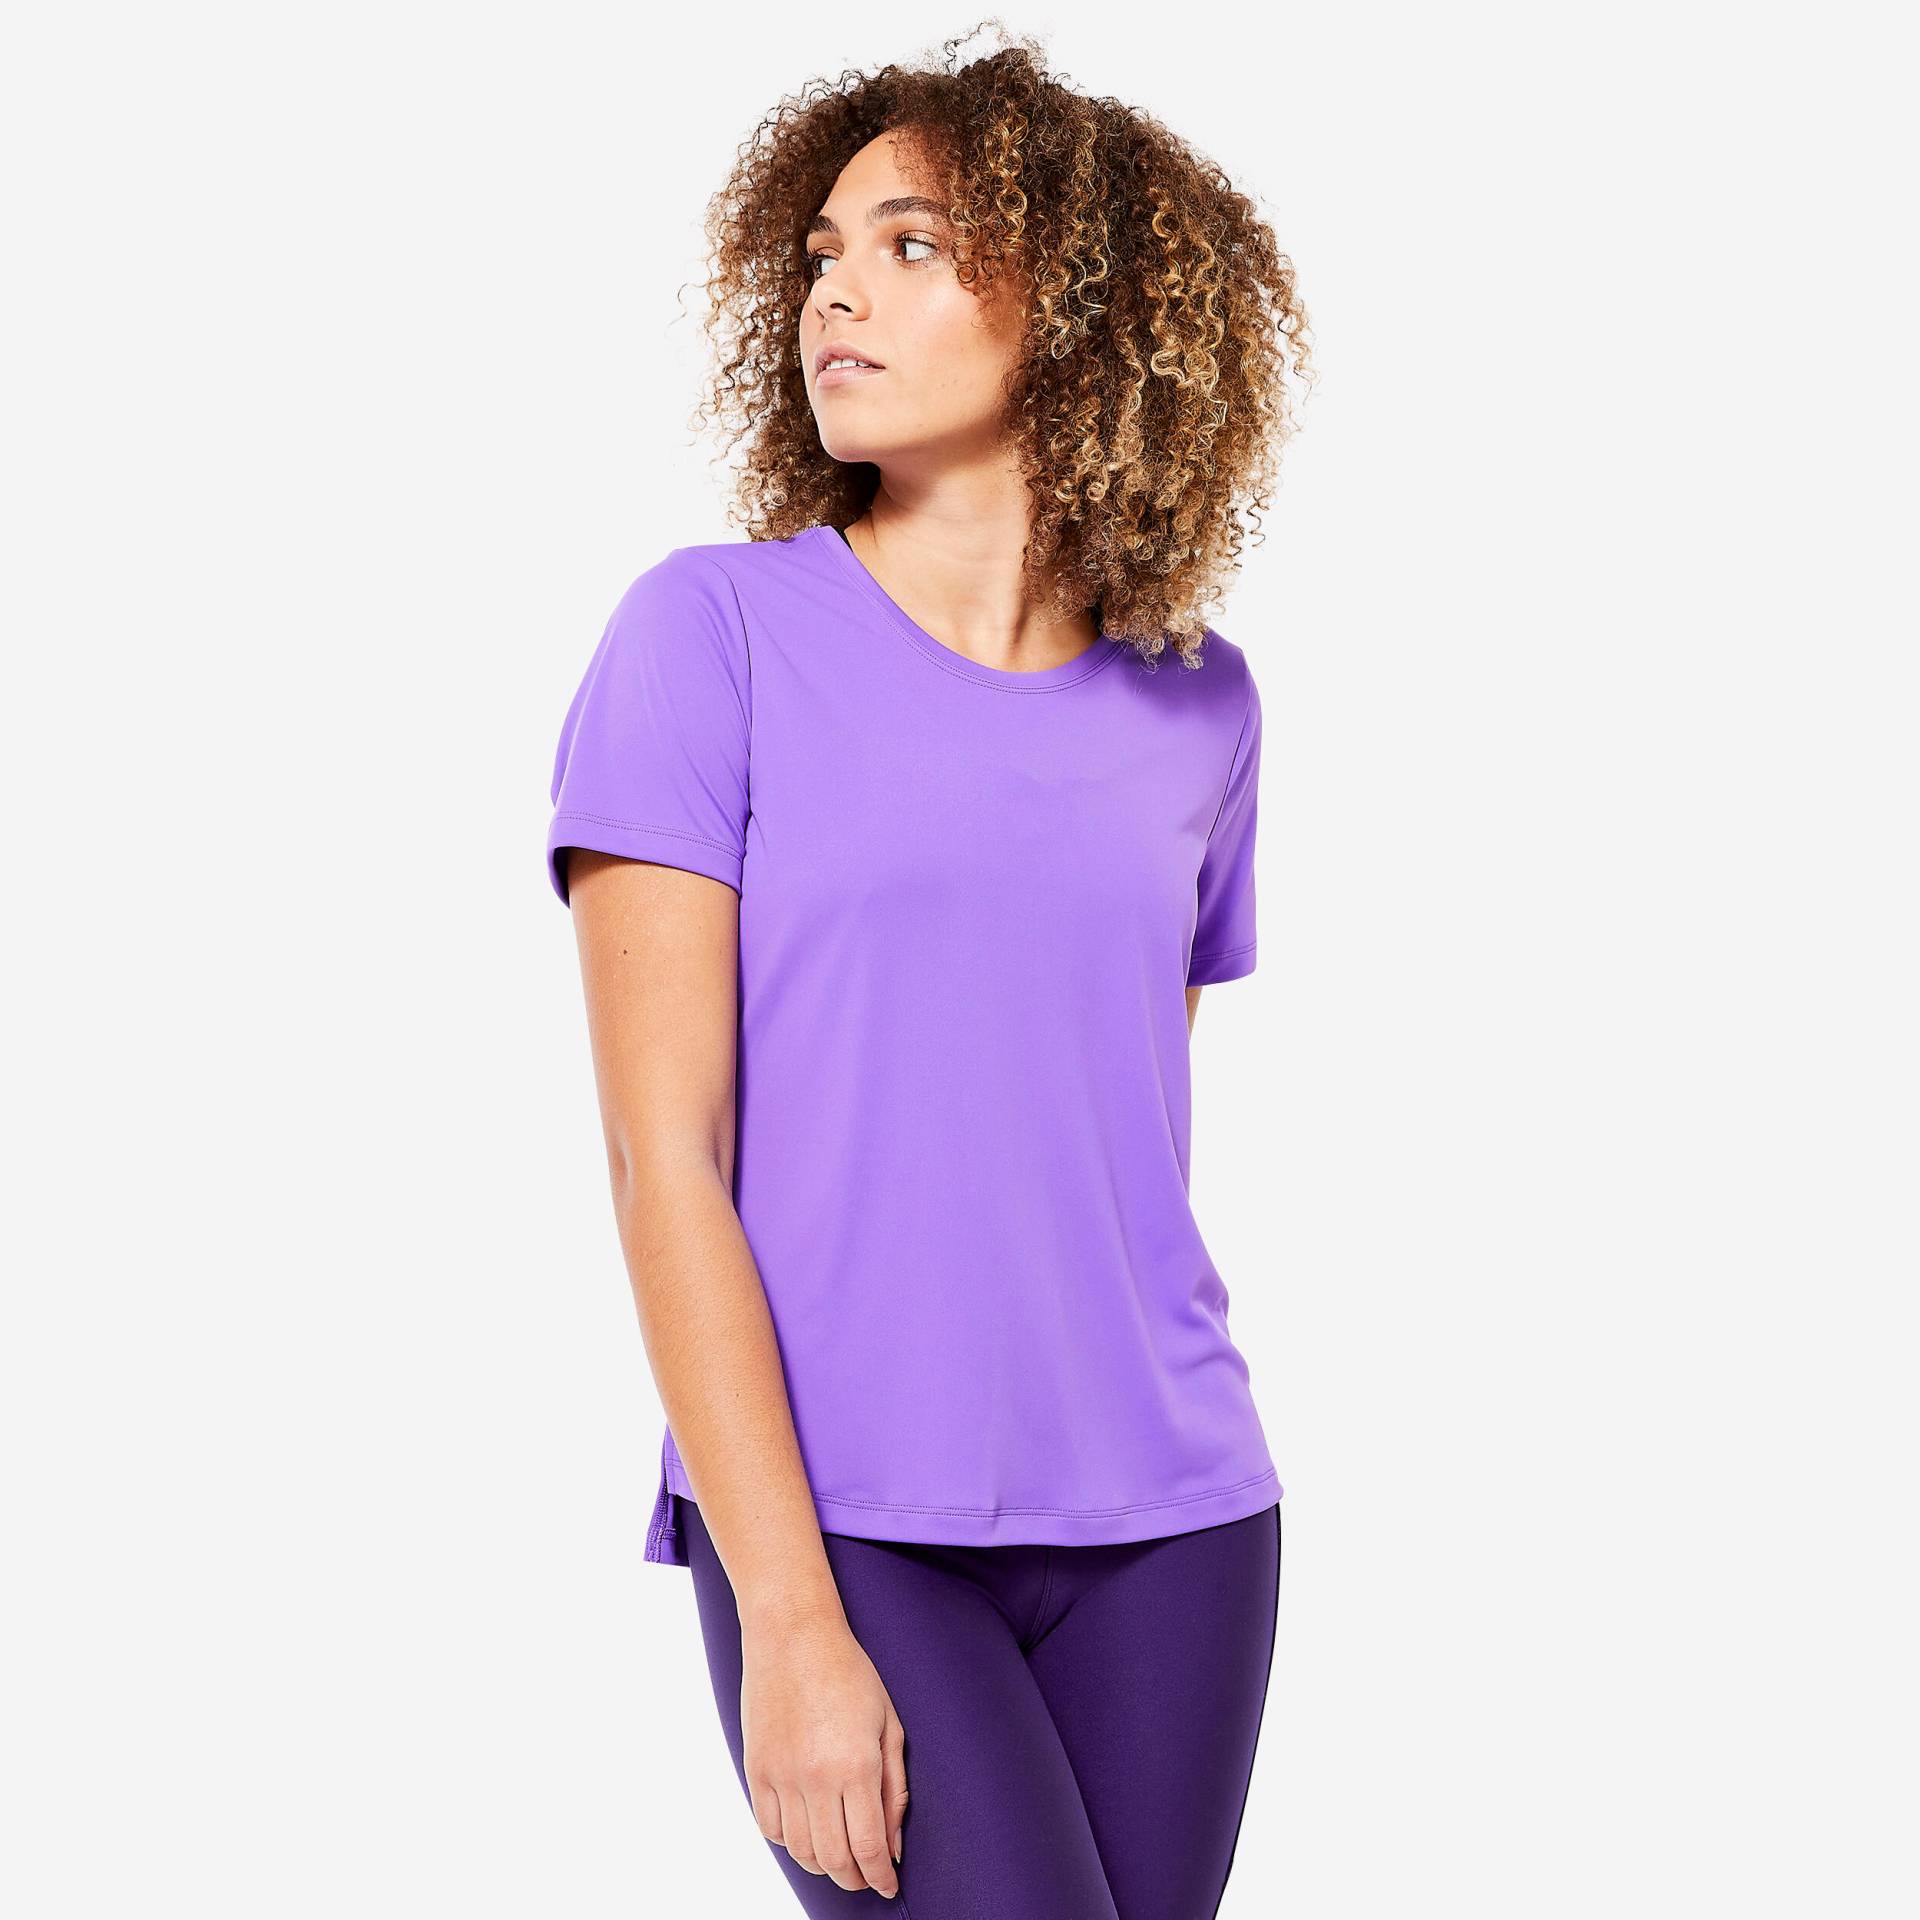 T-Shirt Damen - FTS120 violett von Domyos